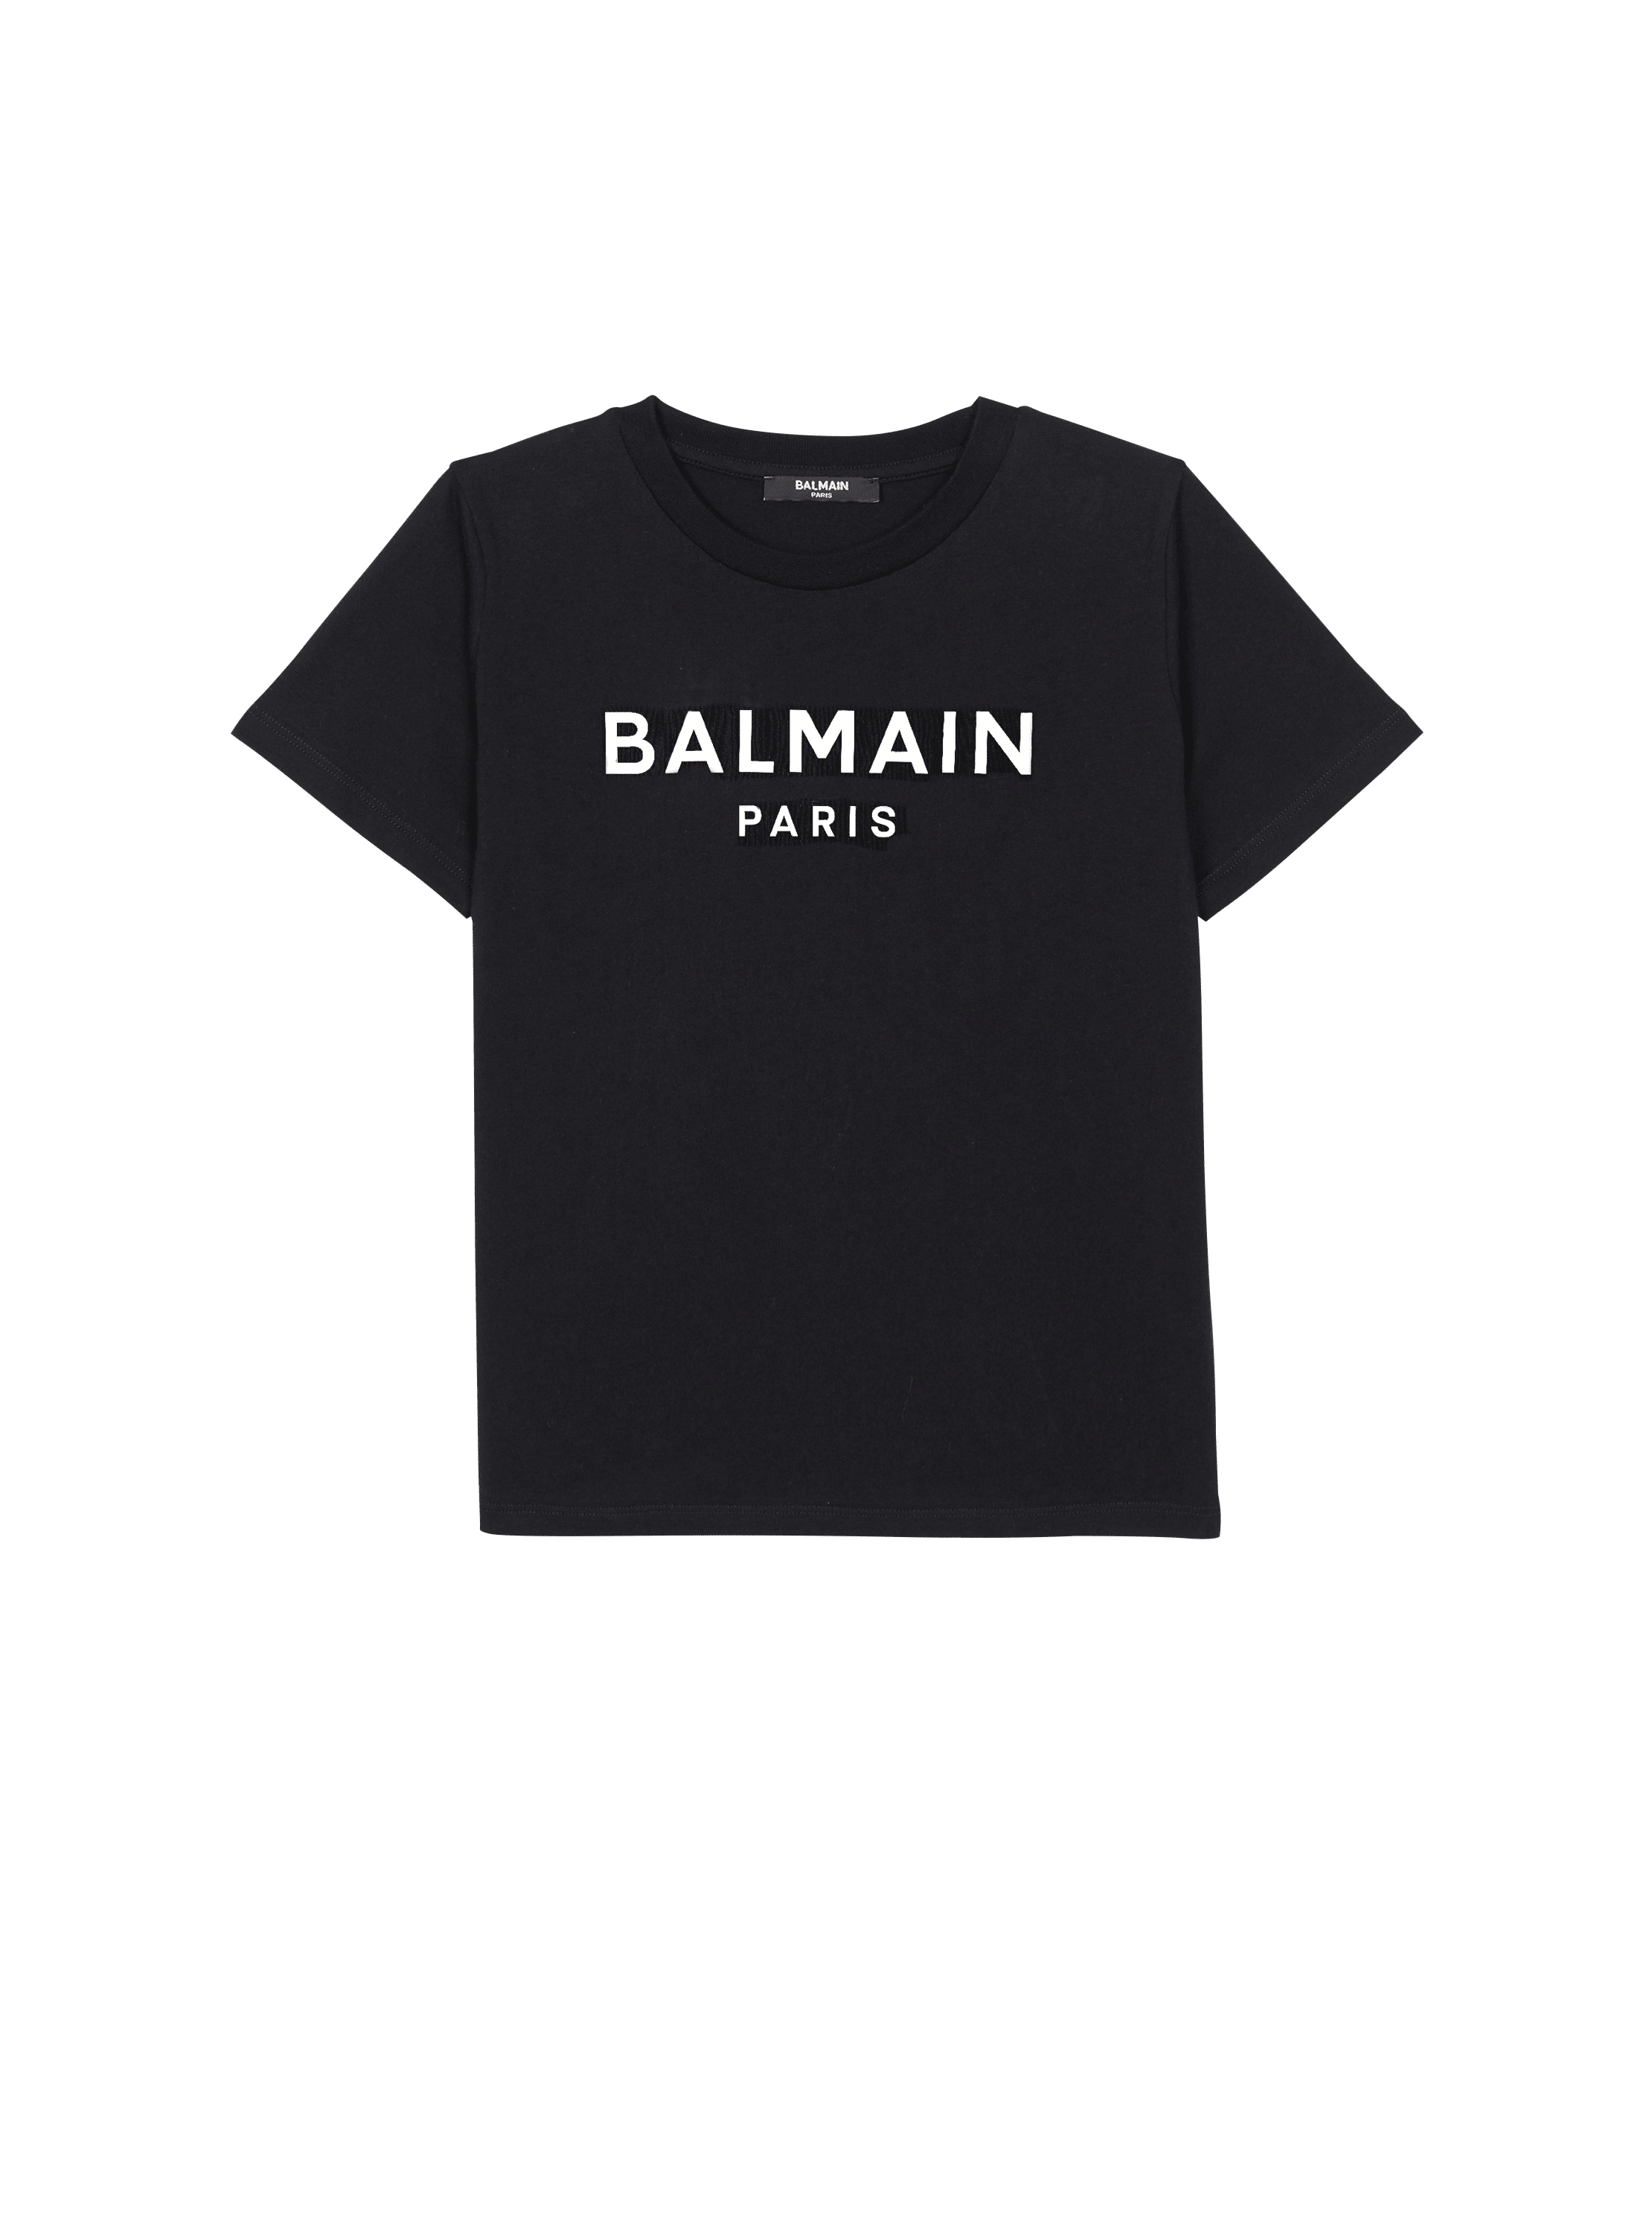 Balmain Paris metal T-shirt black - Child | BALMAIN